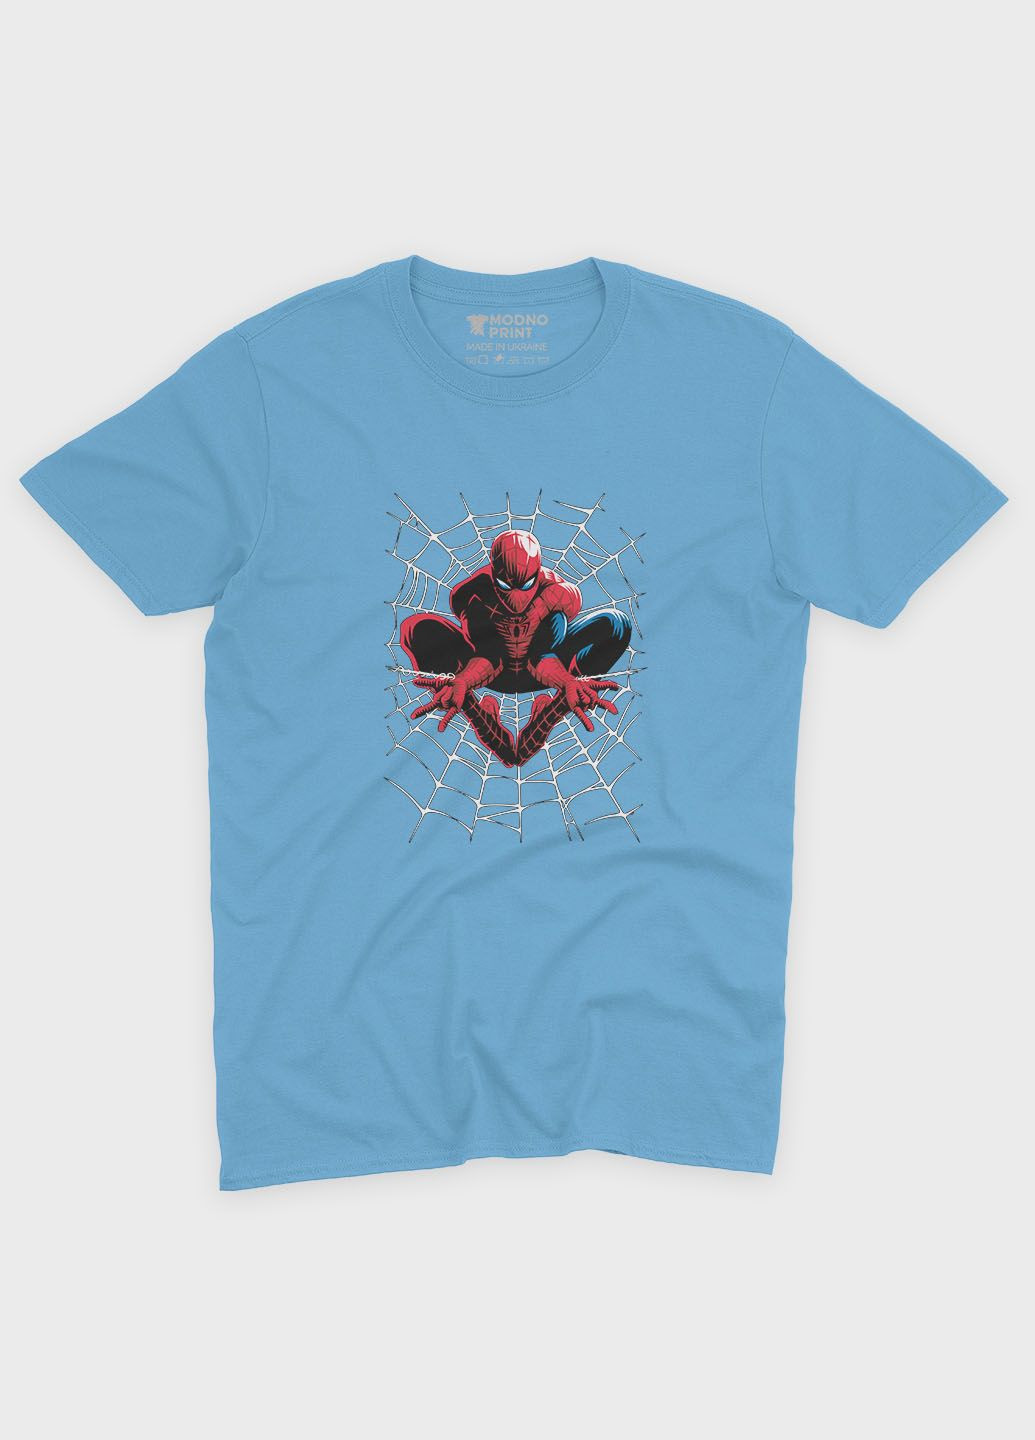 Голубая демисезонная футболка для девочки с принтом супергероя - человек-паук (ts001-1-lbl-006-014-064-g) Modno